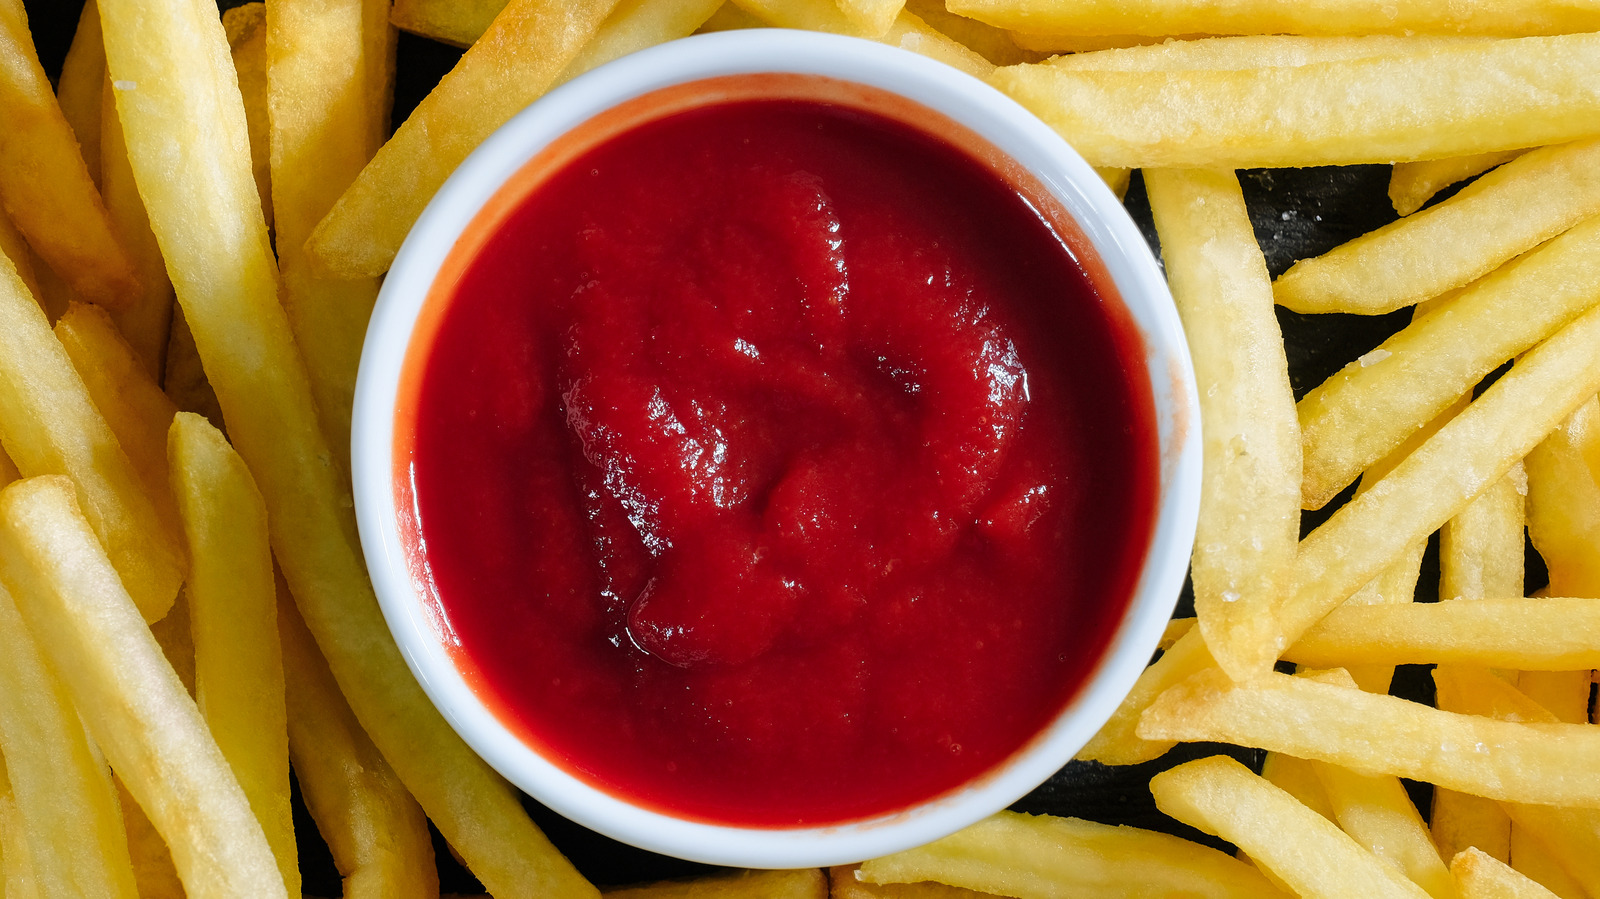 Costco now sells Whataburger Ketchup